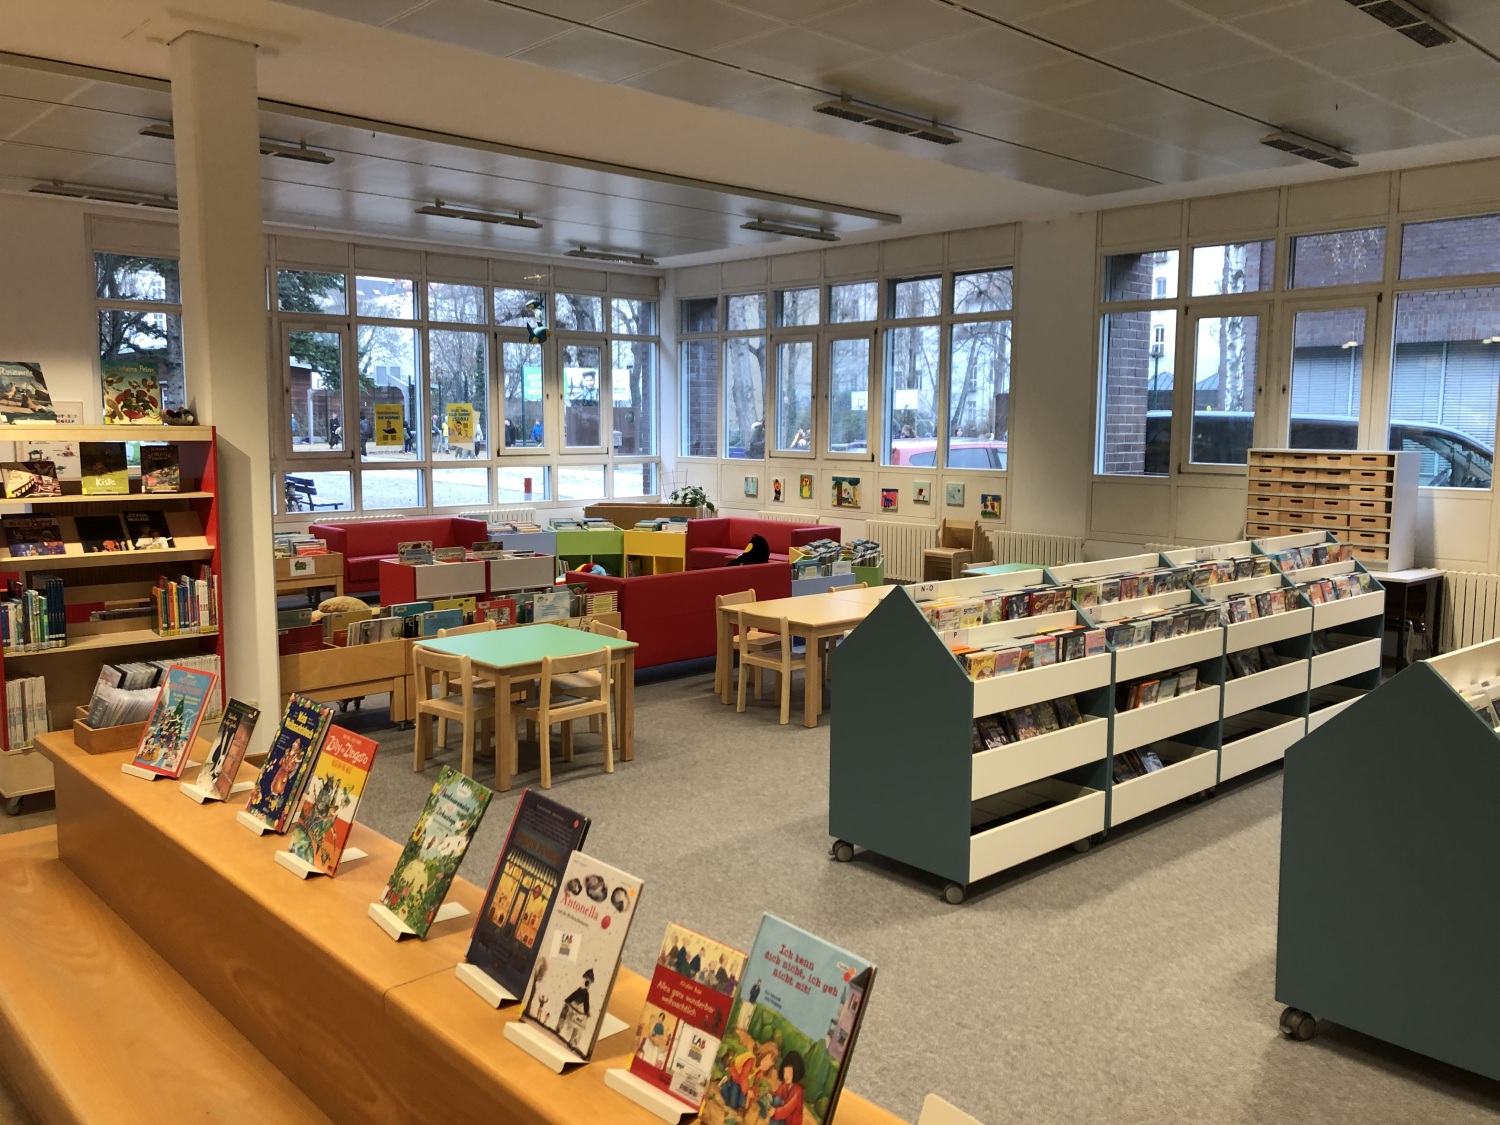 Medientröge, Tische und Stühle für Kinder in einer Bibliothek